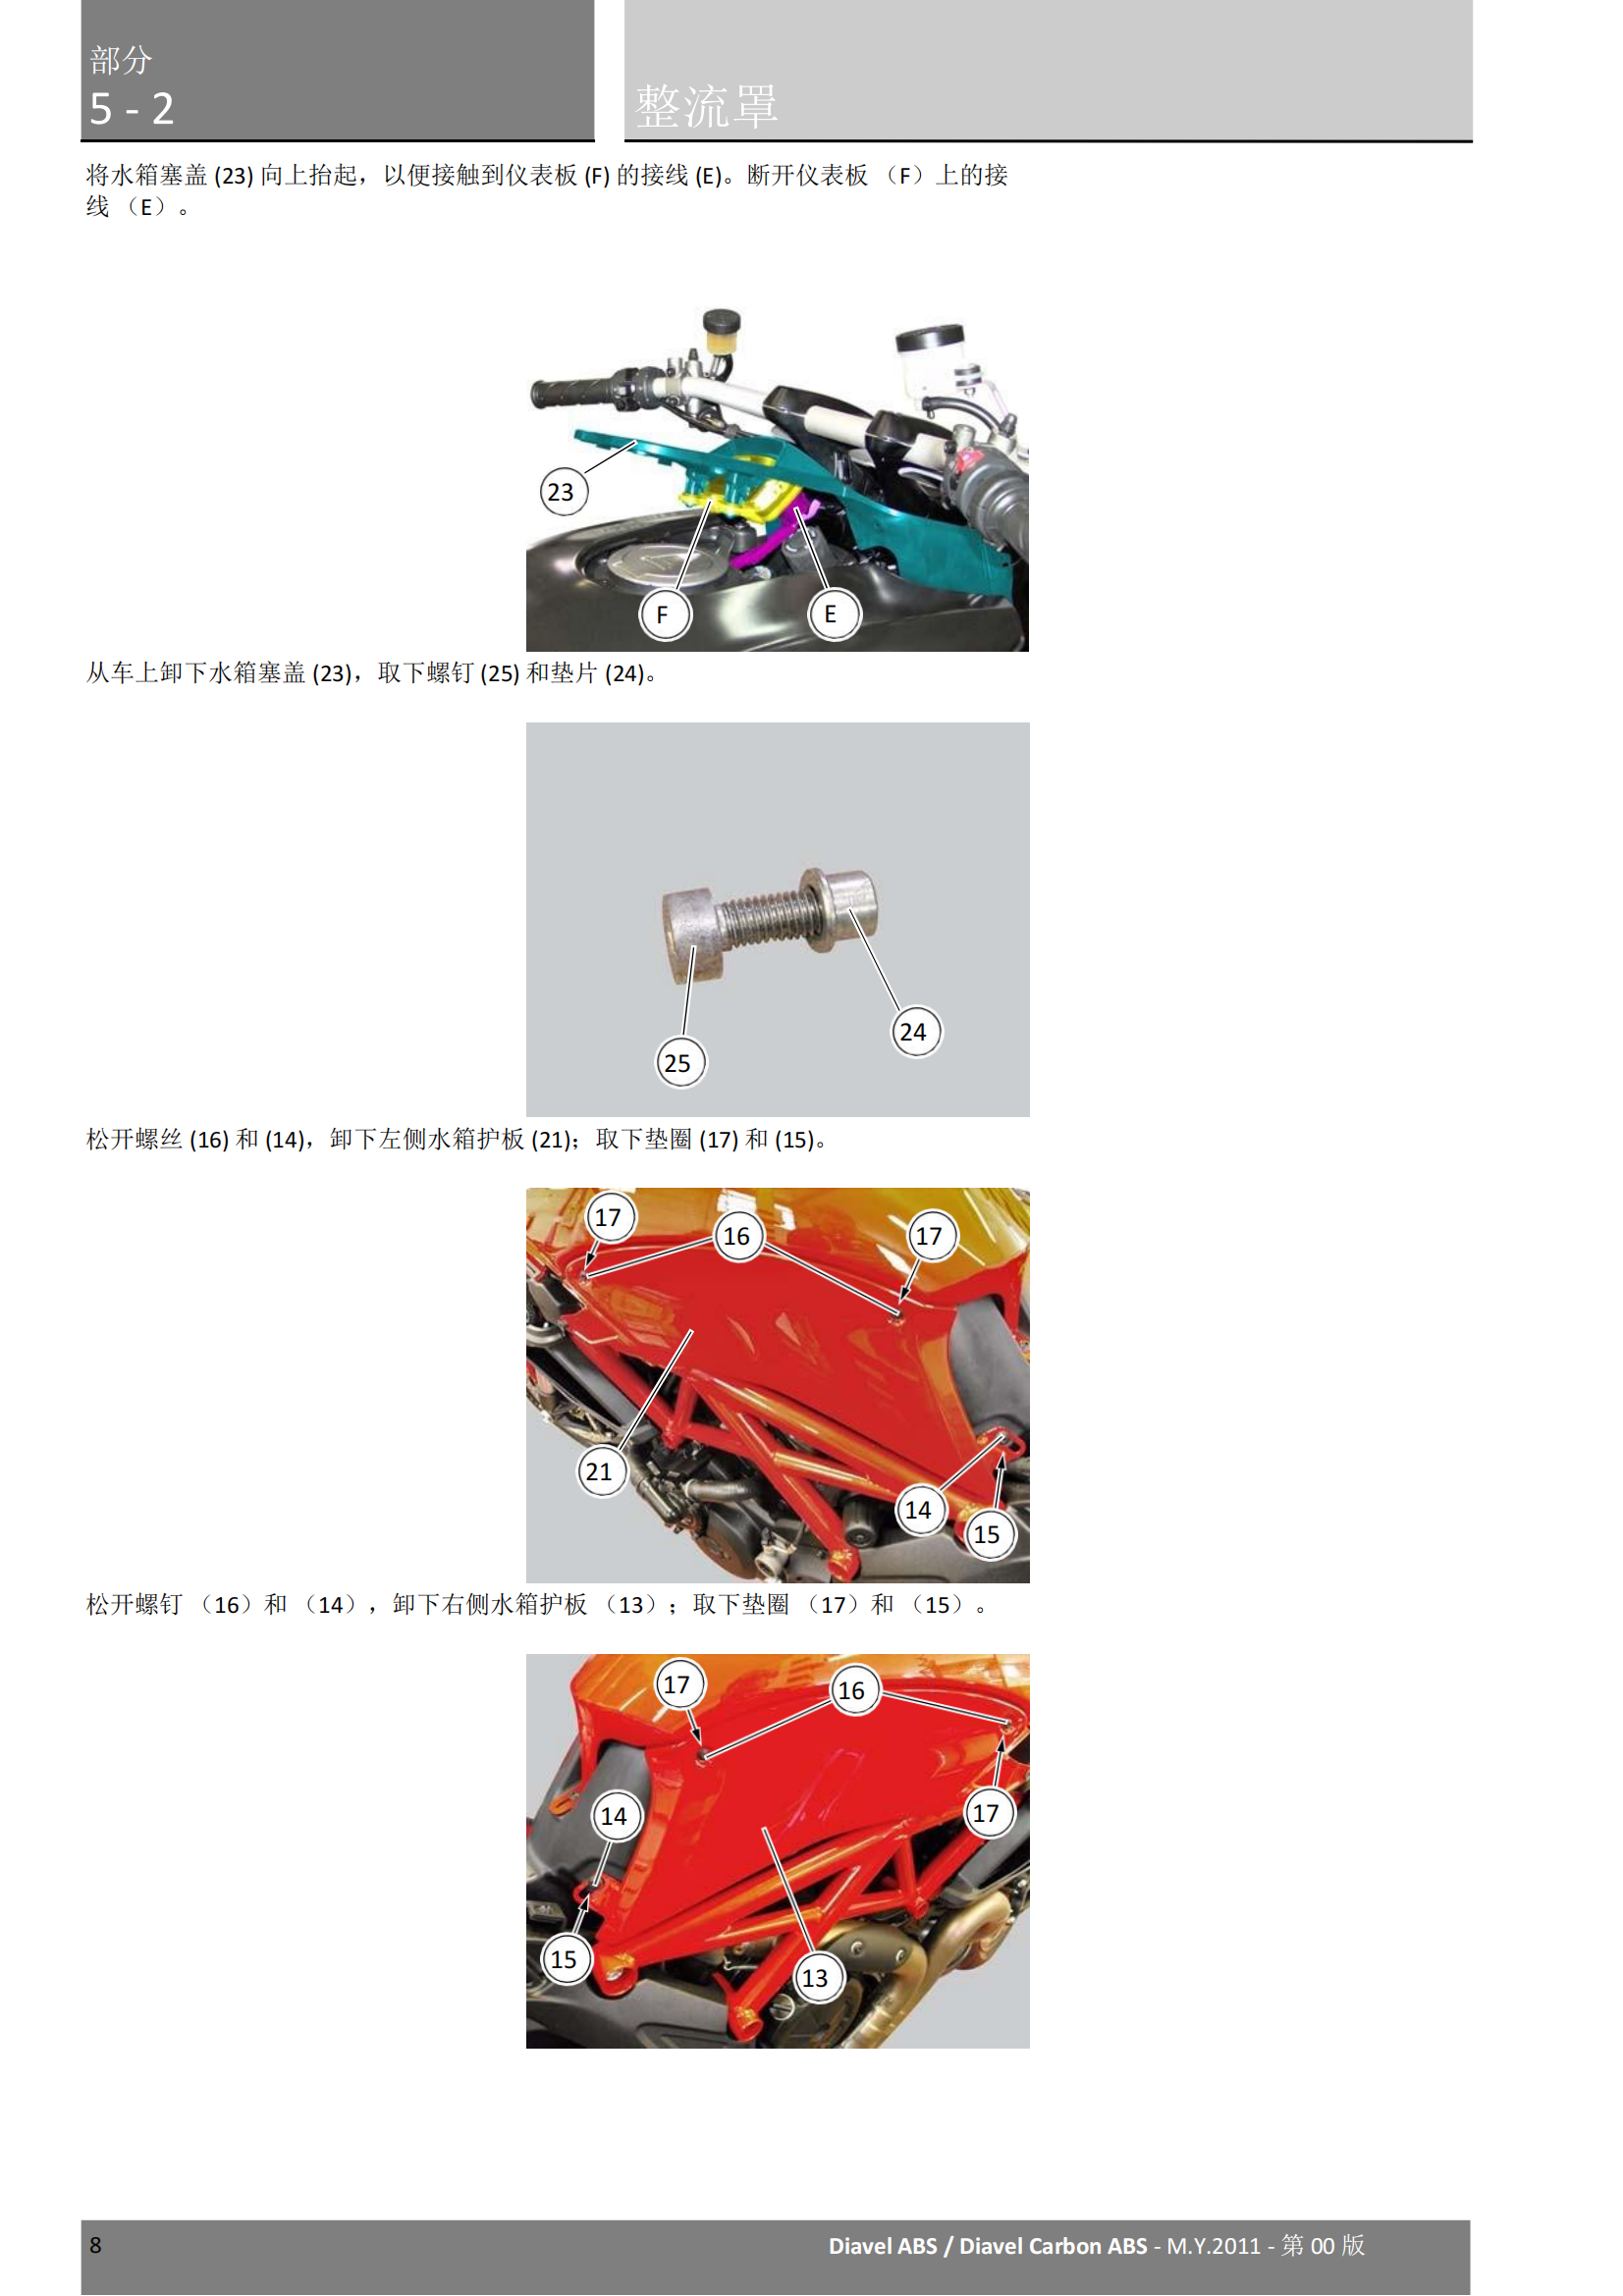 简体中文2011年杜卡迪大魔鬼 Ducati Diavel ABS维修手册插图1